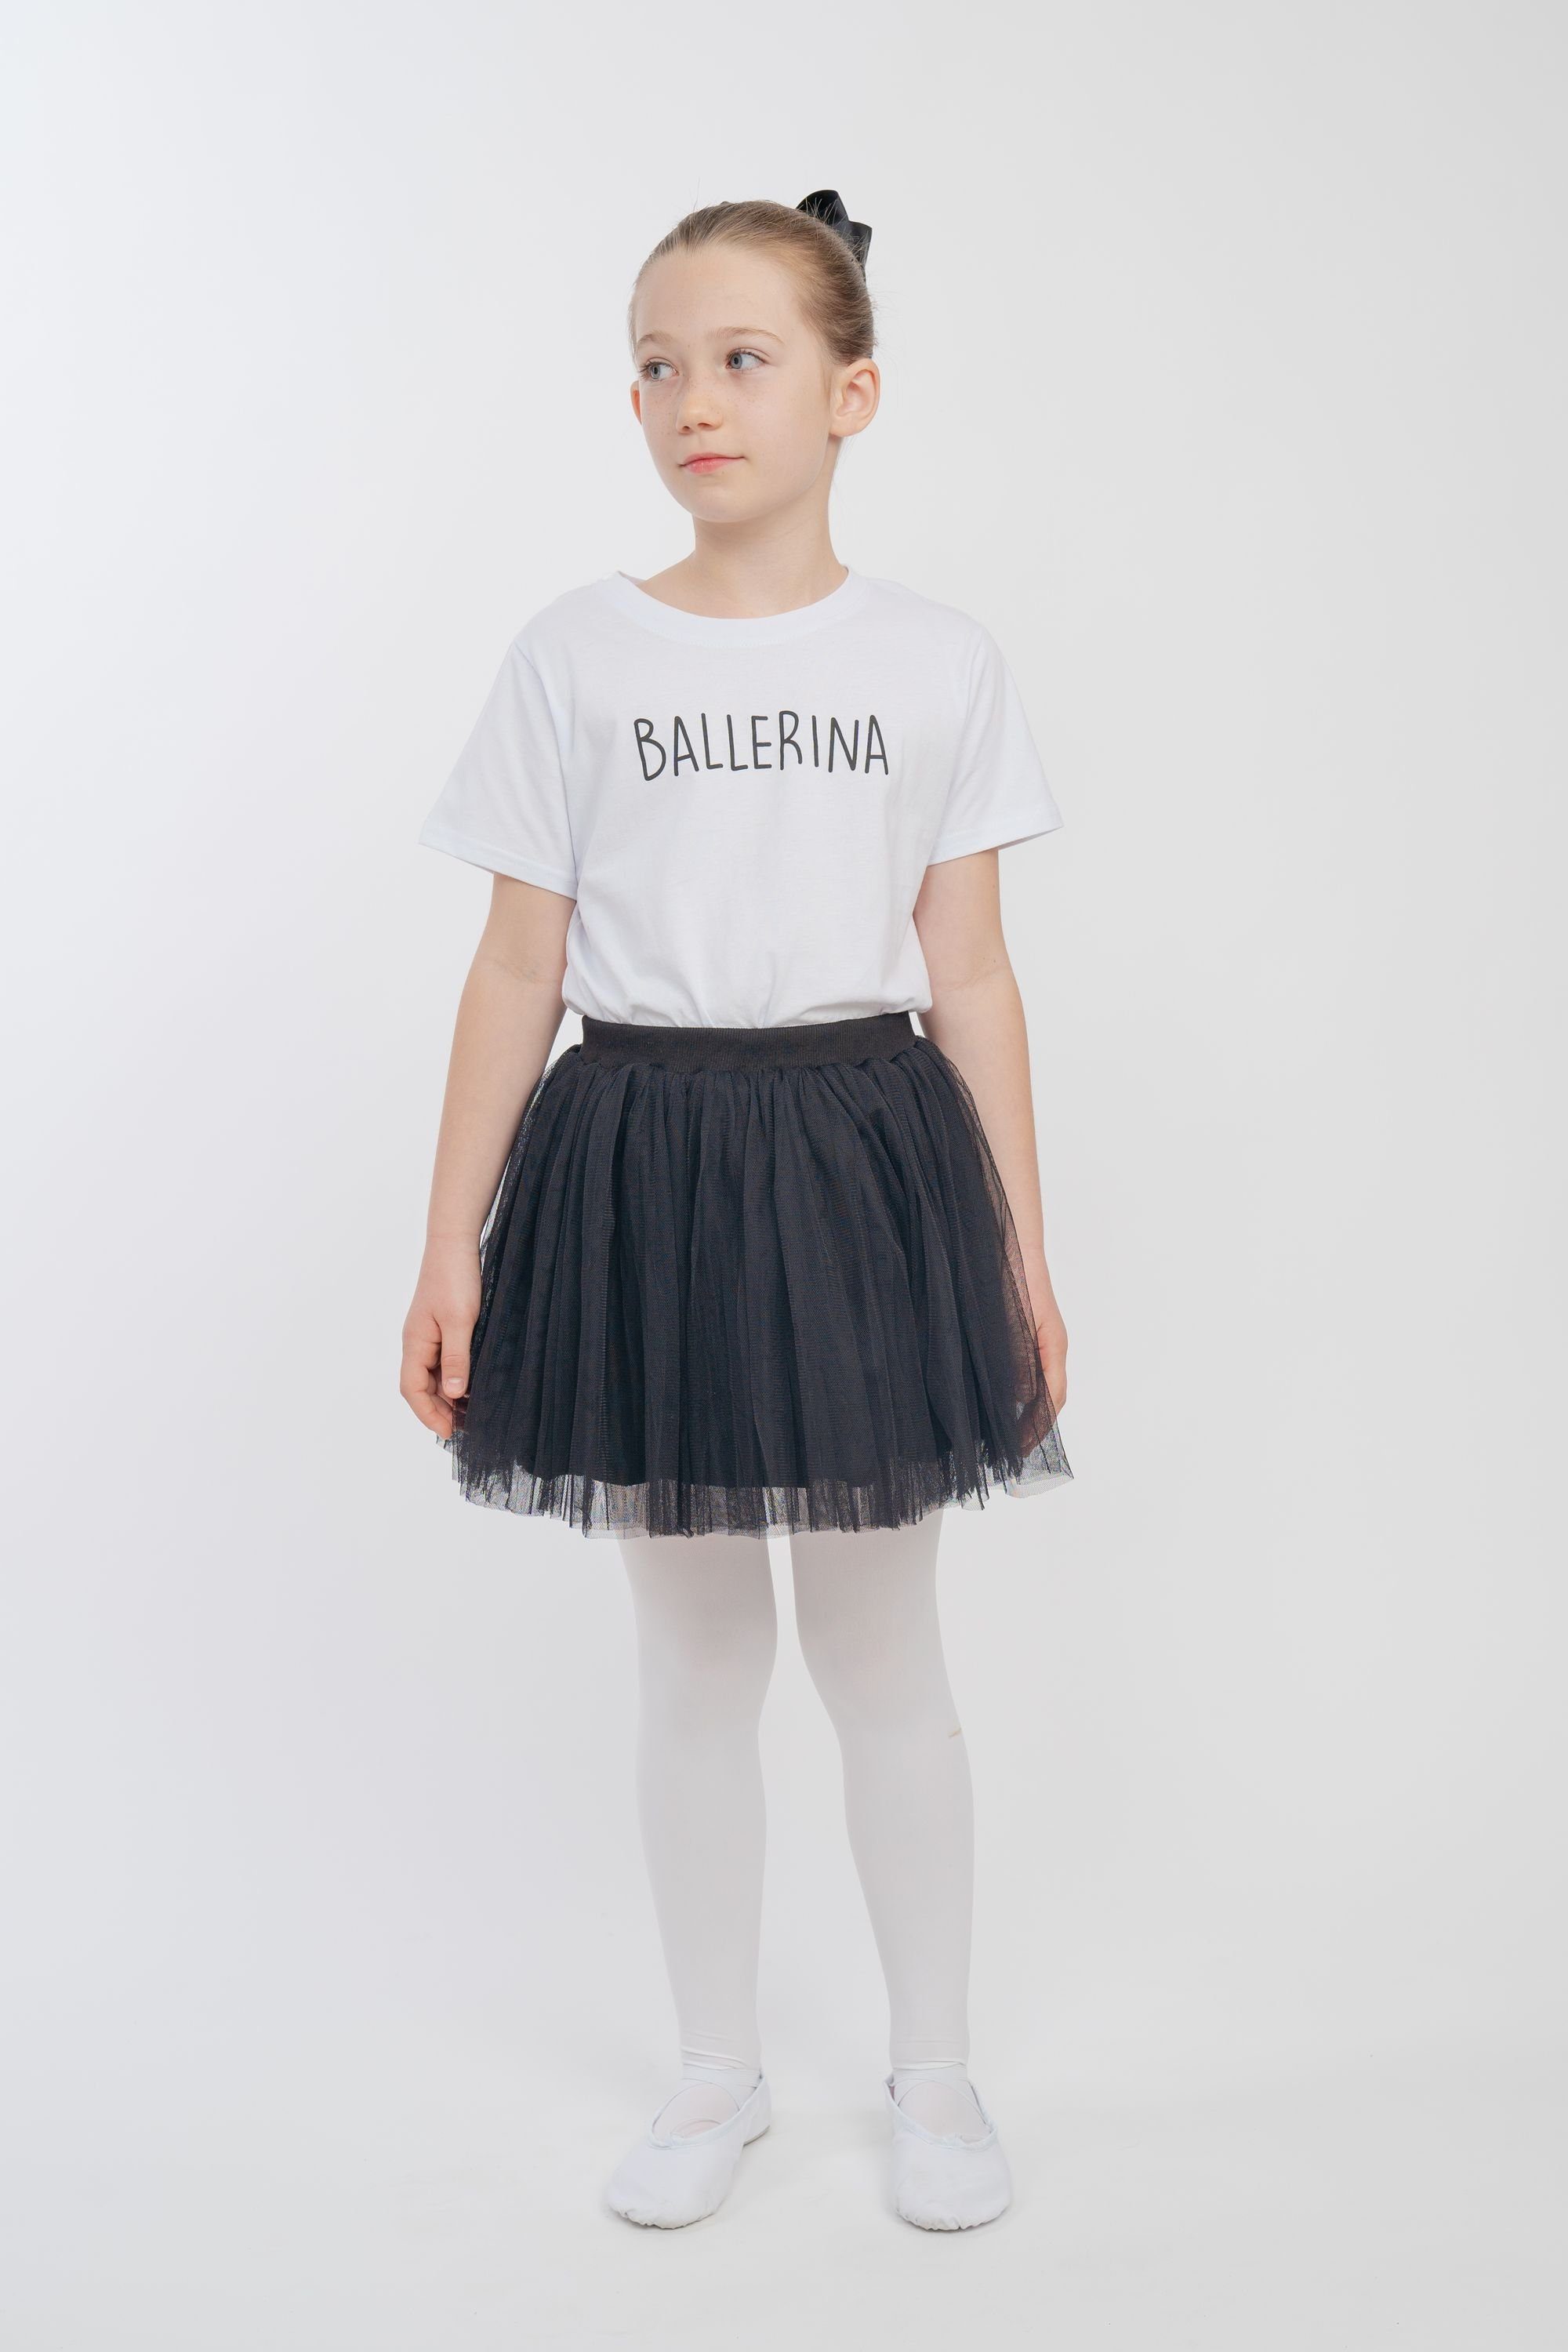 weich Tüllrock Unterrock Ballerina blickdichtem Little tanzmuster Tüllrock aus mit besonders schwarz Tüll weichem